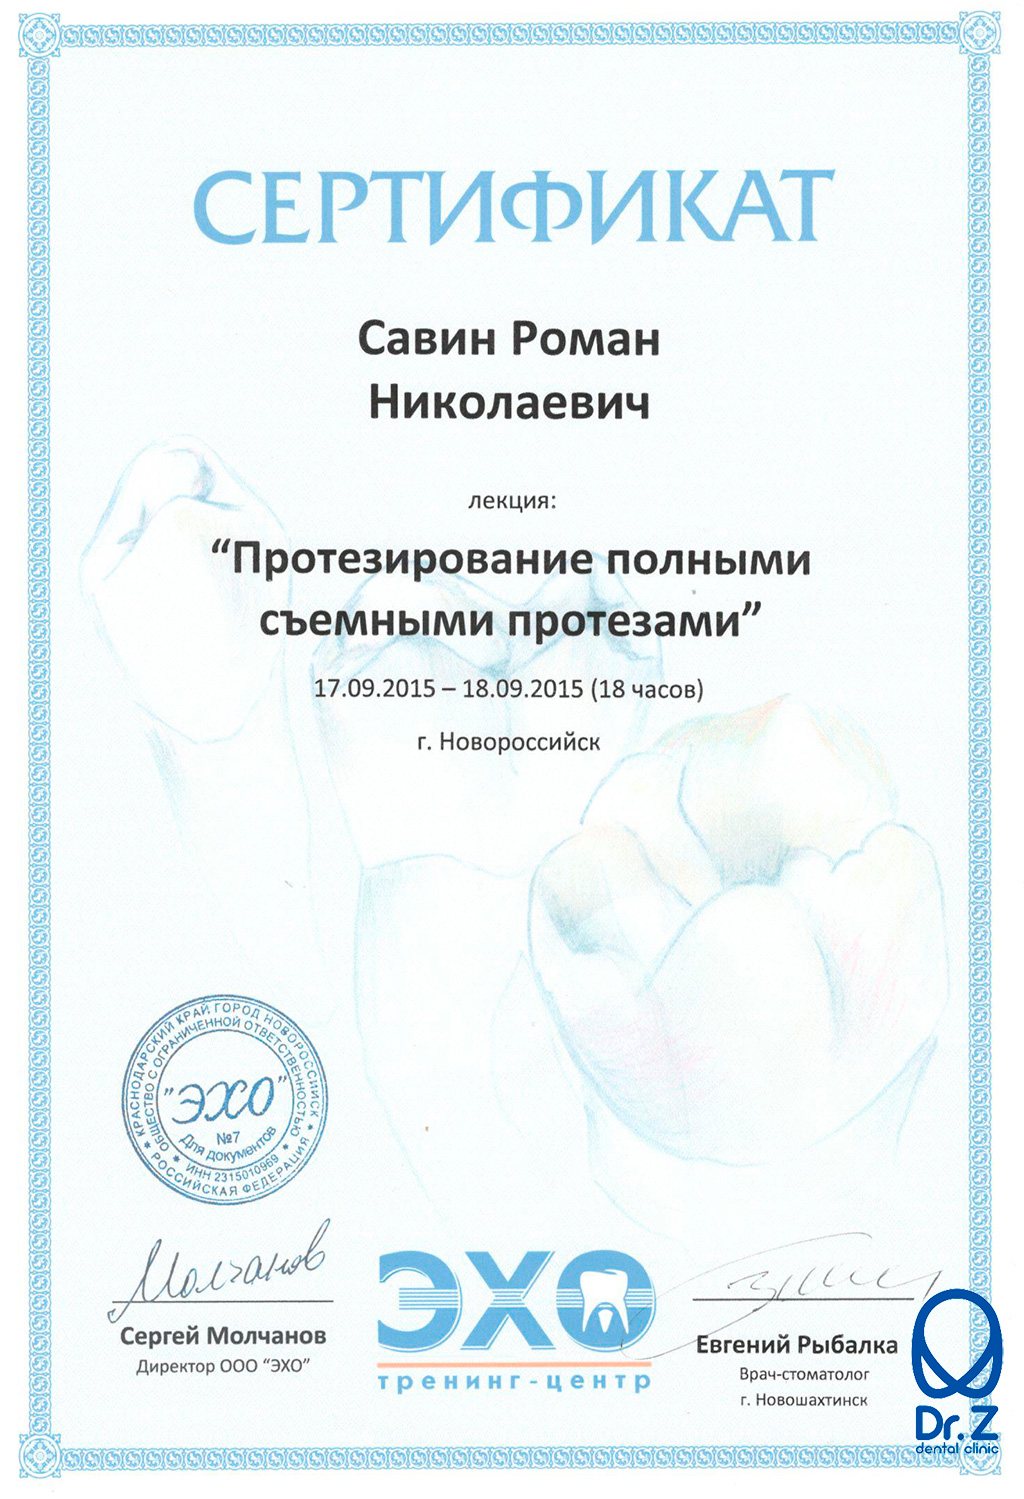 Сертификат по результатам прохождения Савиным Романом Николаевичем курса по теме 